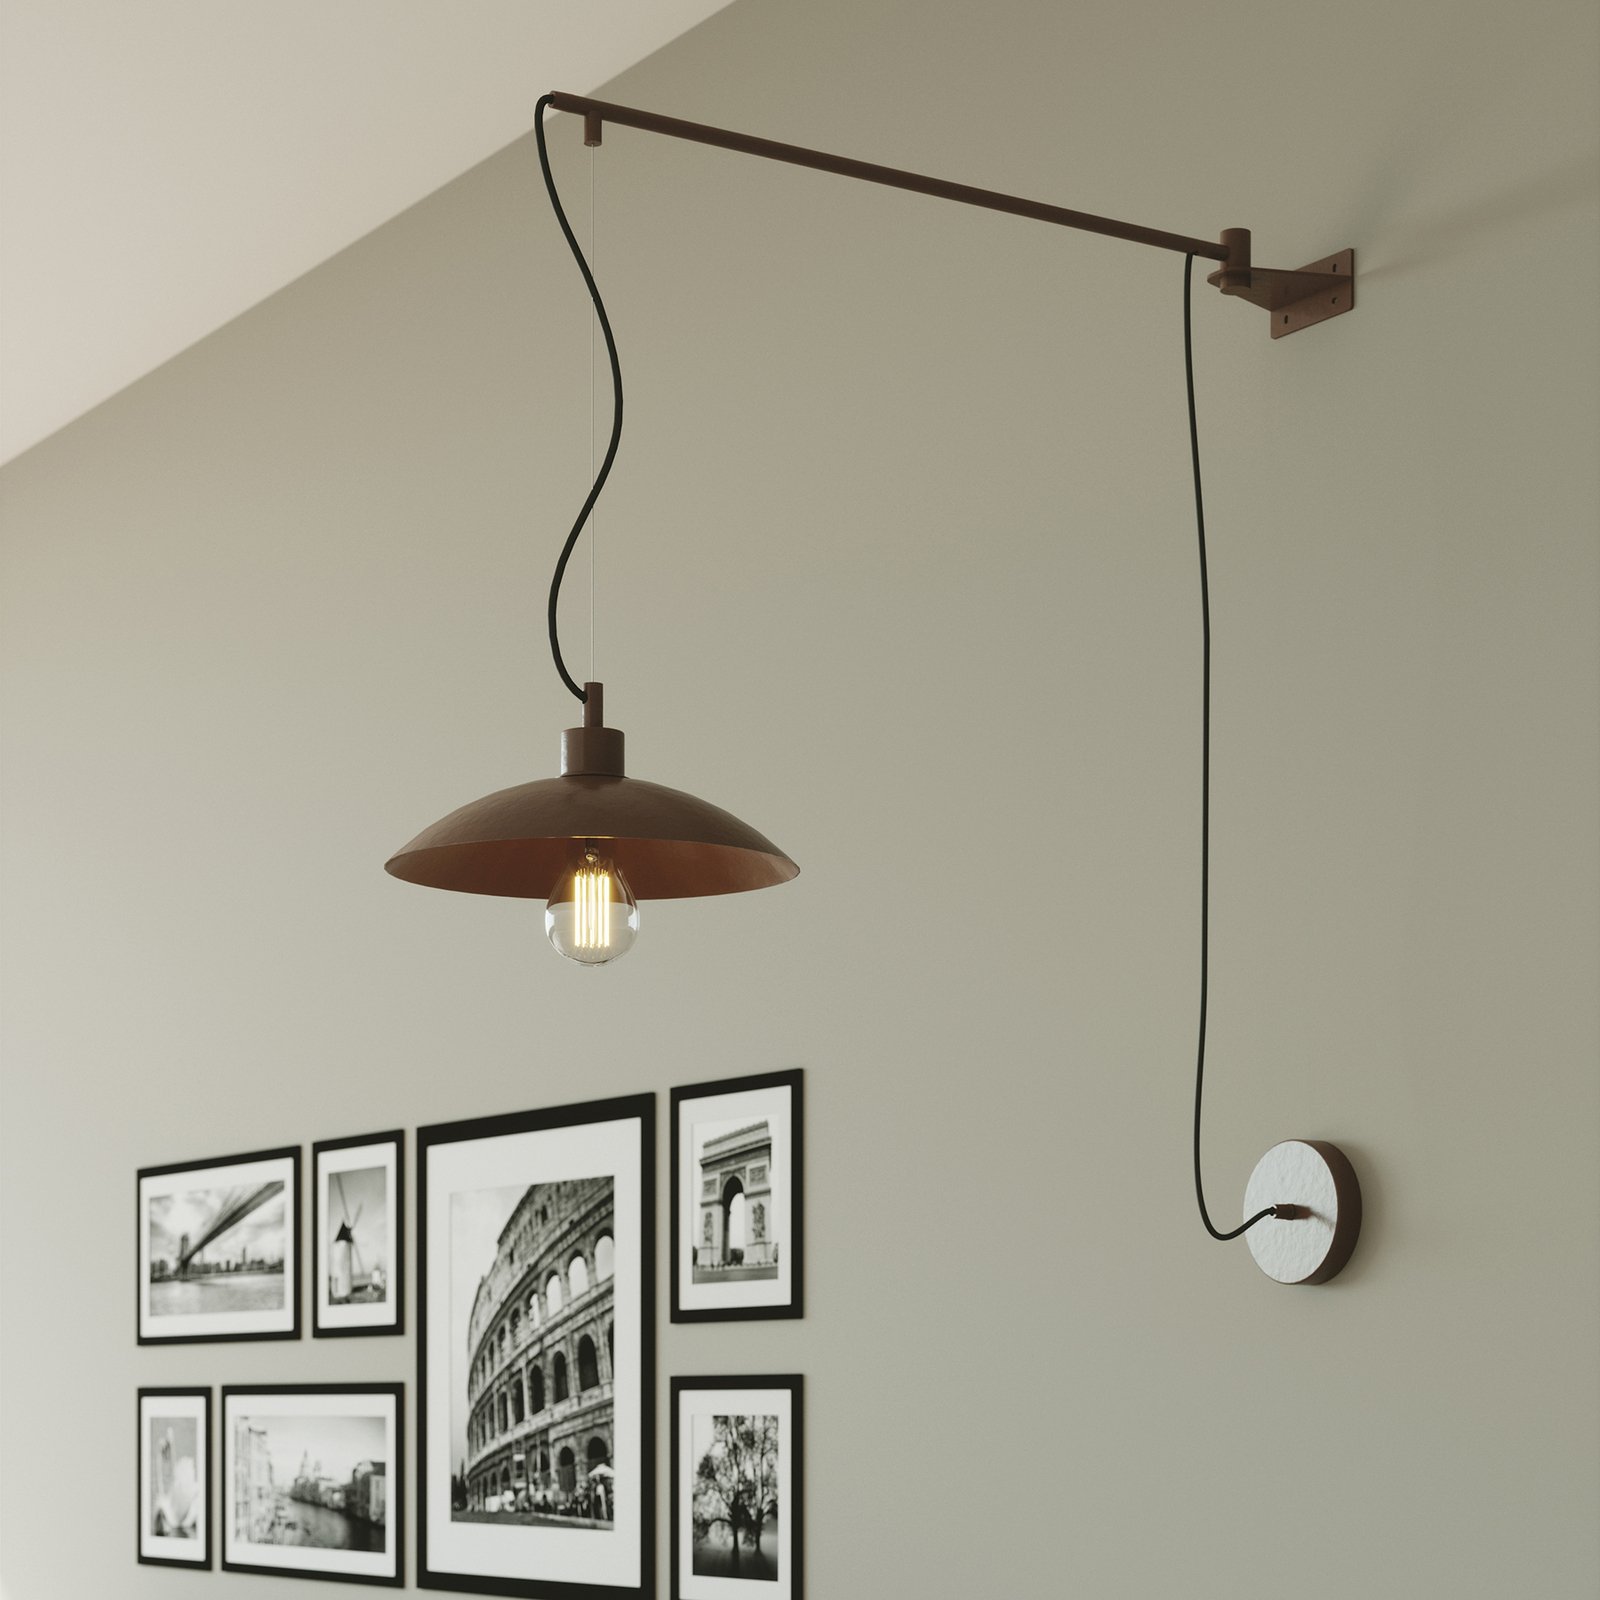 Eldorado wall light with a cantilever arm, black